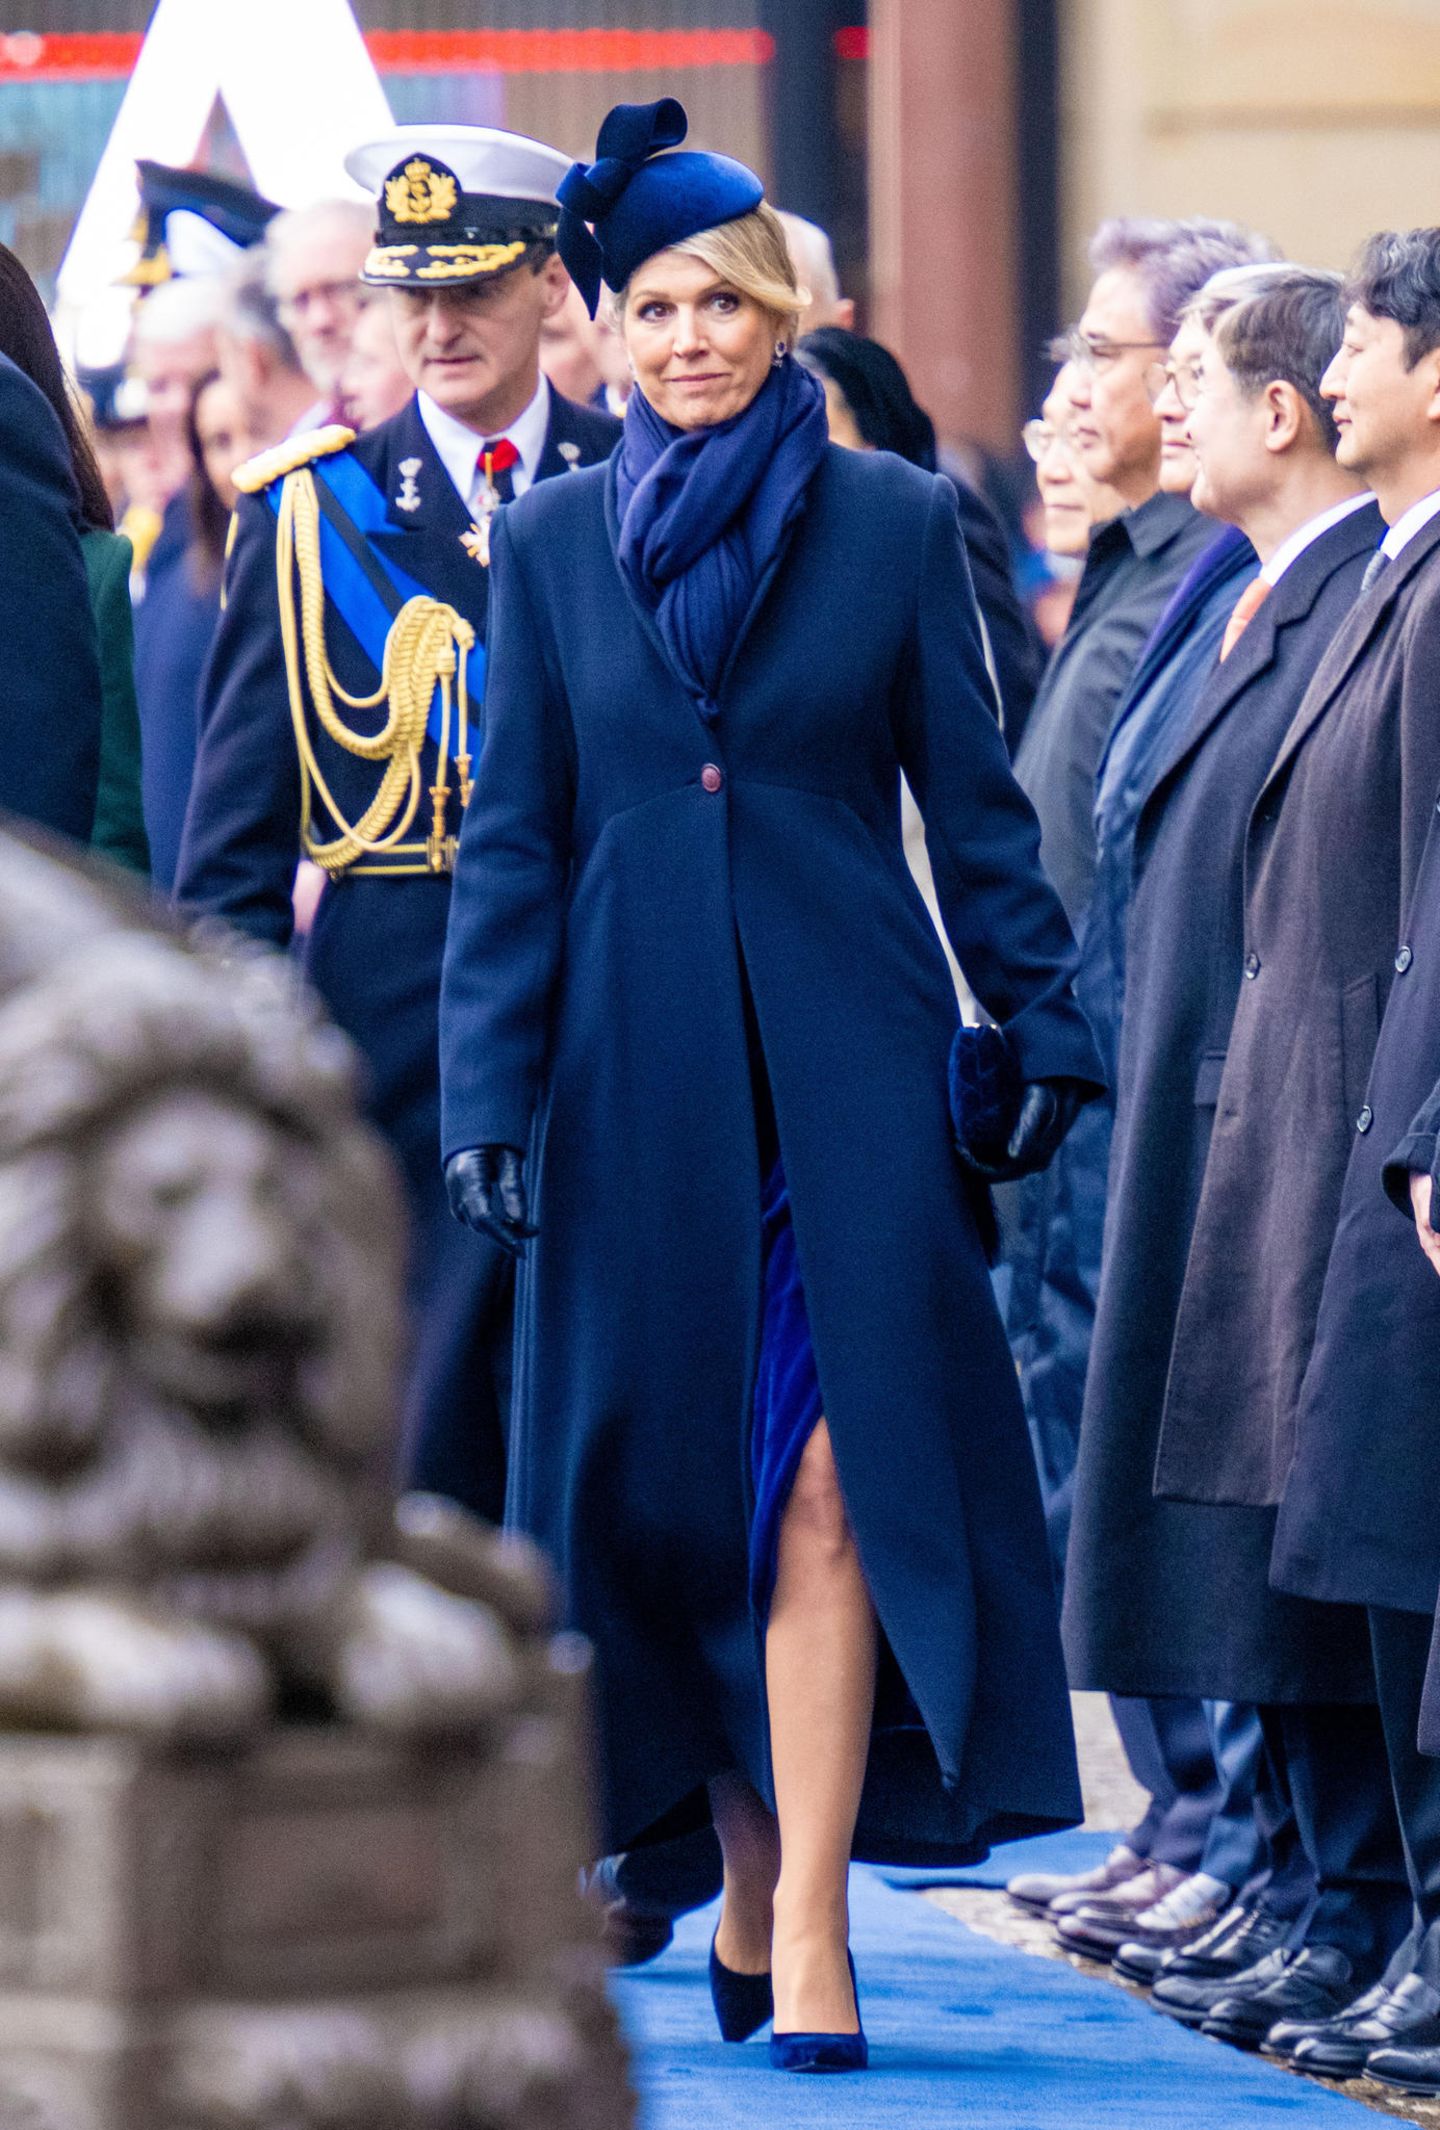 Für die Begrüßung des südkoreanischen Präsidentenpaares auf dem Dam-Platz in Amsterdam hat sich Königin Máxima einen eleganten Mantellook in Navyblau ausgesucht, unter dem ein royalblauer Samtrock hervorblitzt.